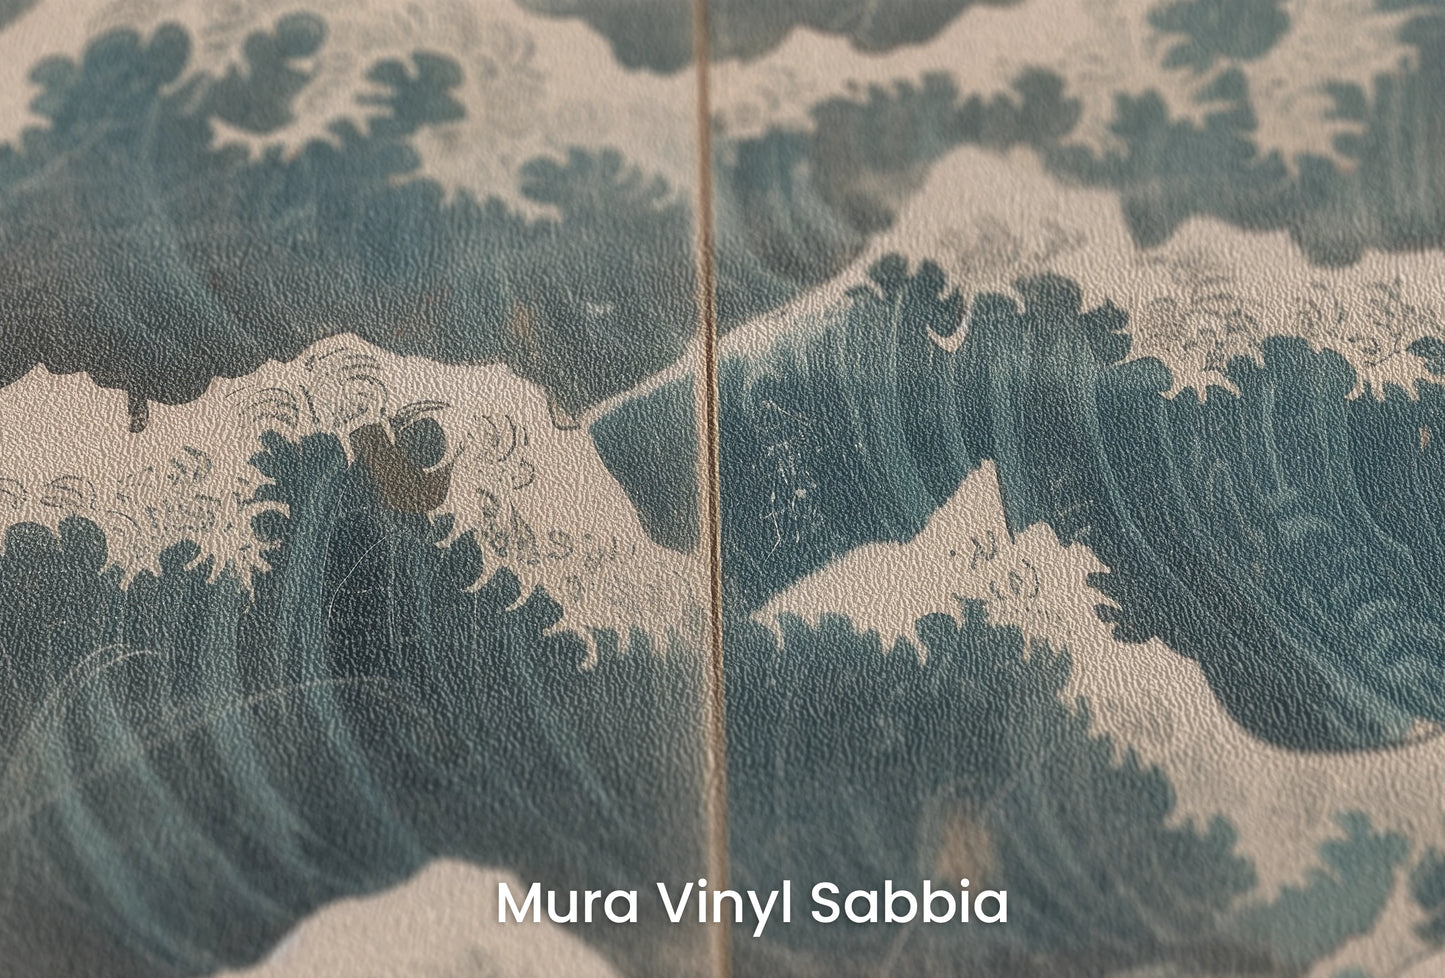 Zbliżenie na artystyczną fototapetę o nazwie Serene Ocean Hues na podłożu Mura Vinyl Sabbia struktura grubego ziarna piasku.